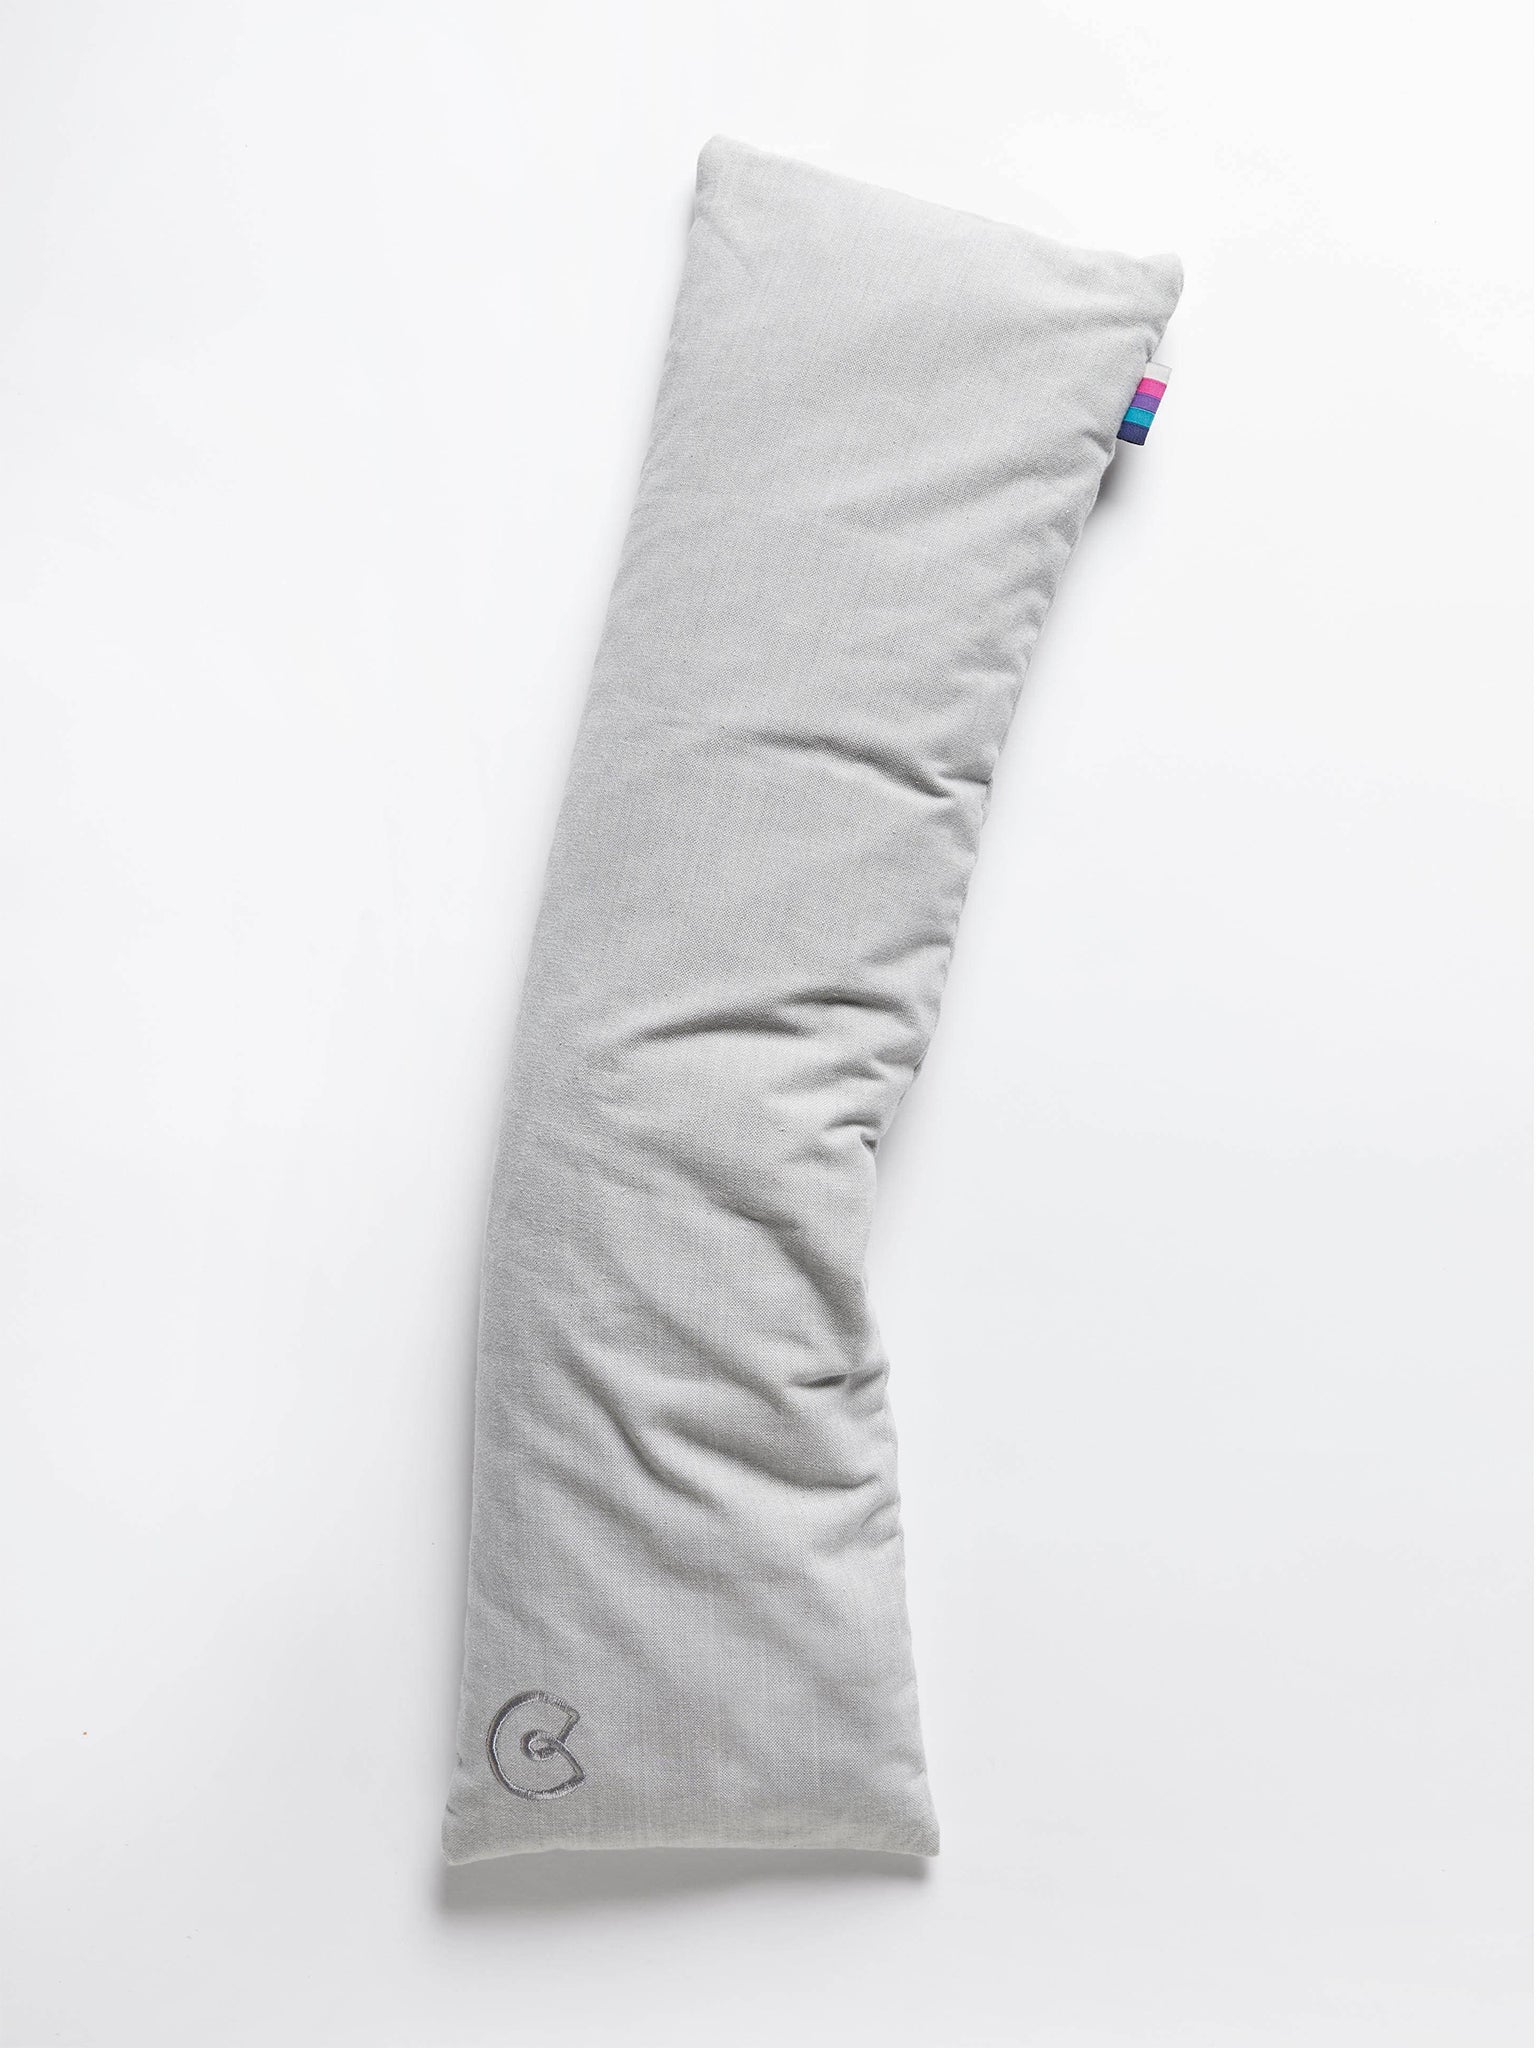 Yogamatters Organic Cotton Pranayama Yoga Pillow - Box of 10